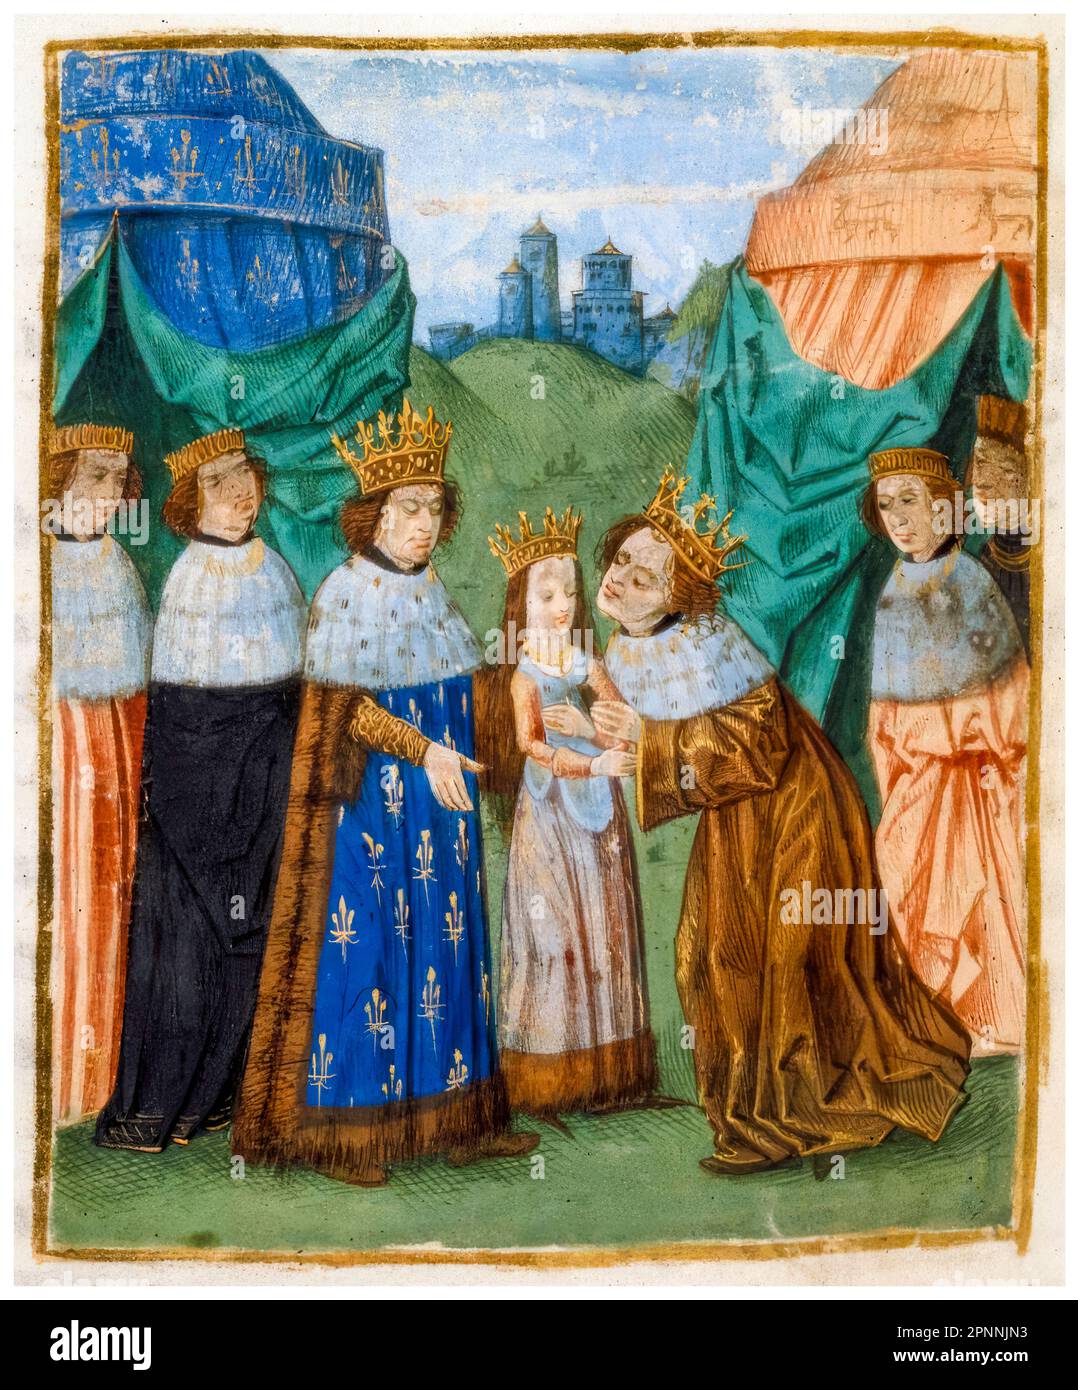 König Karl VI. Von Frankreich (1368-1422) übergab seine Tochter Isabella von Valois (1389-1409) an ihren neuen Ehemann König Richard II. Von England (1367-1400) bei einem Treffen in Ardres bei Calais. Isabella von Frankreich war erst sechs Jahre alt, Richard, 29. Beleuchtetes Miniatur-Manuskript-Gemälde von Jean Froissart, 1401-1499 Stockfoto